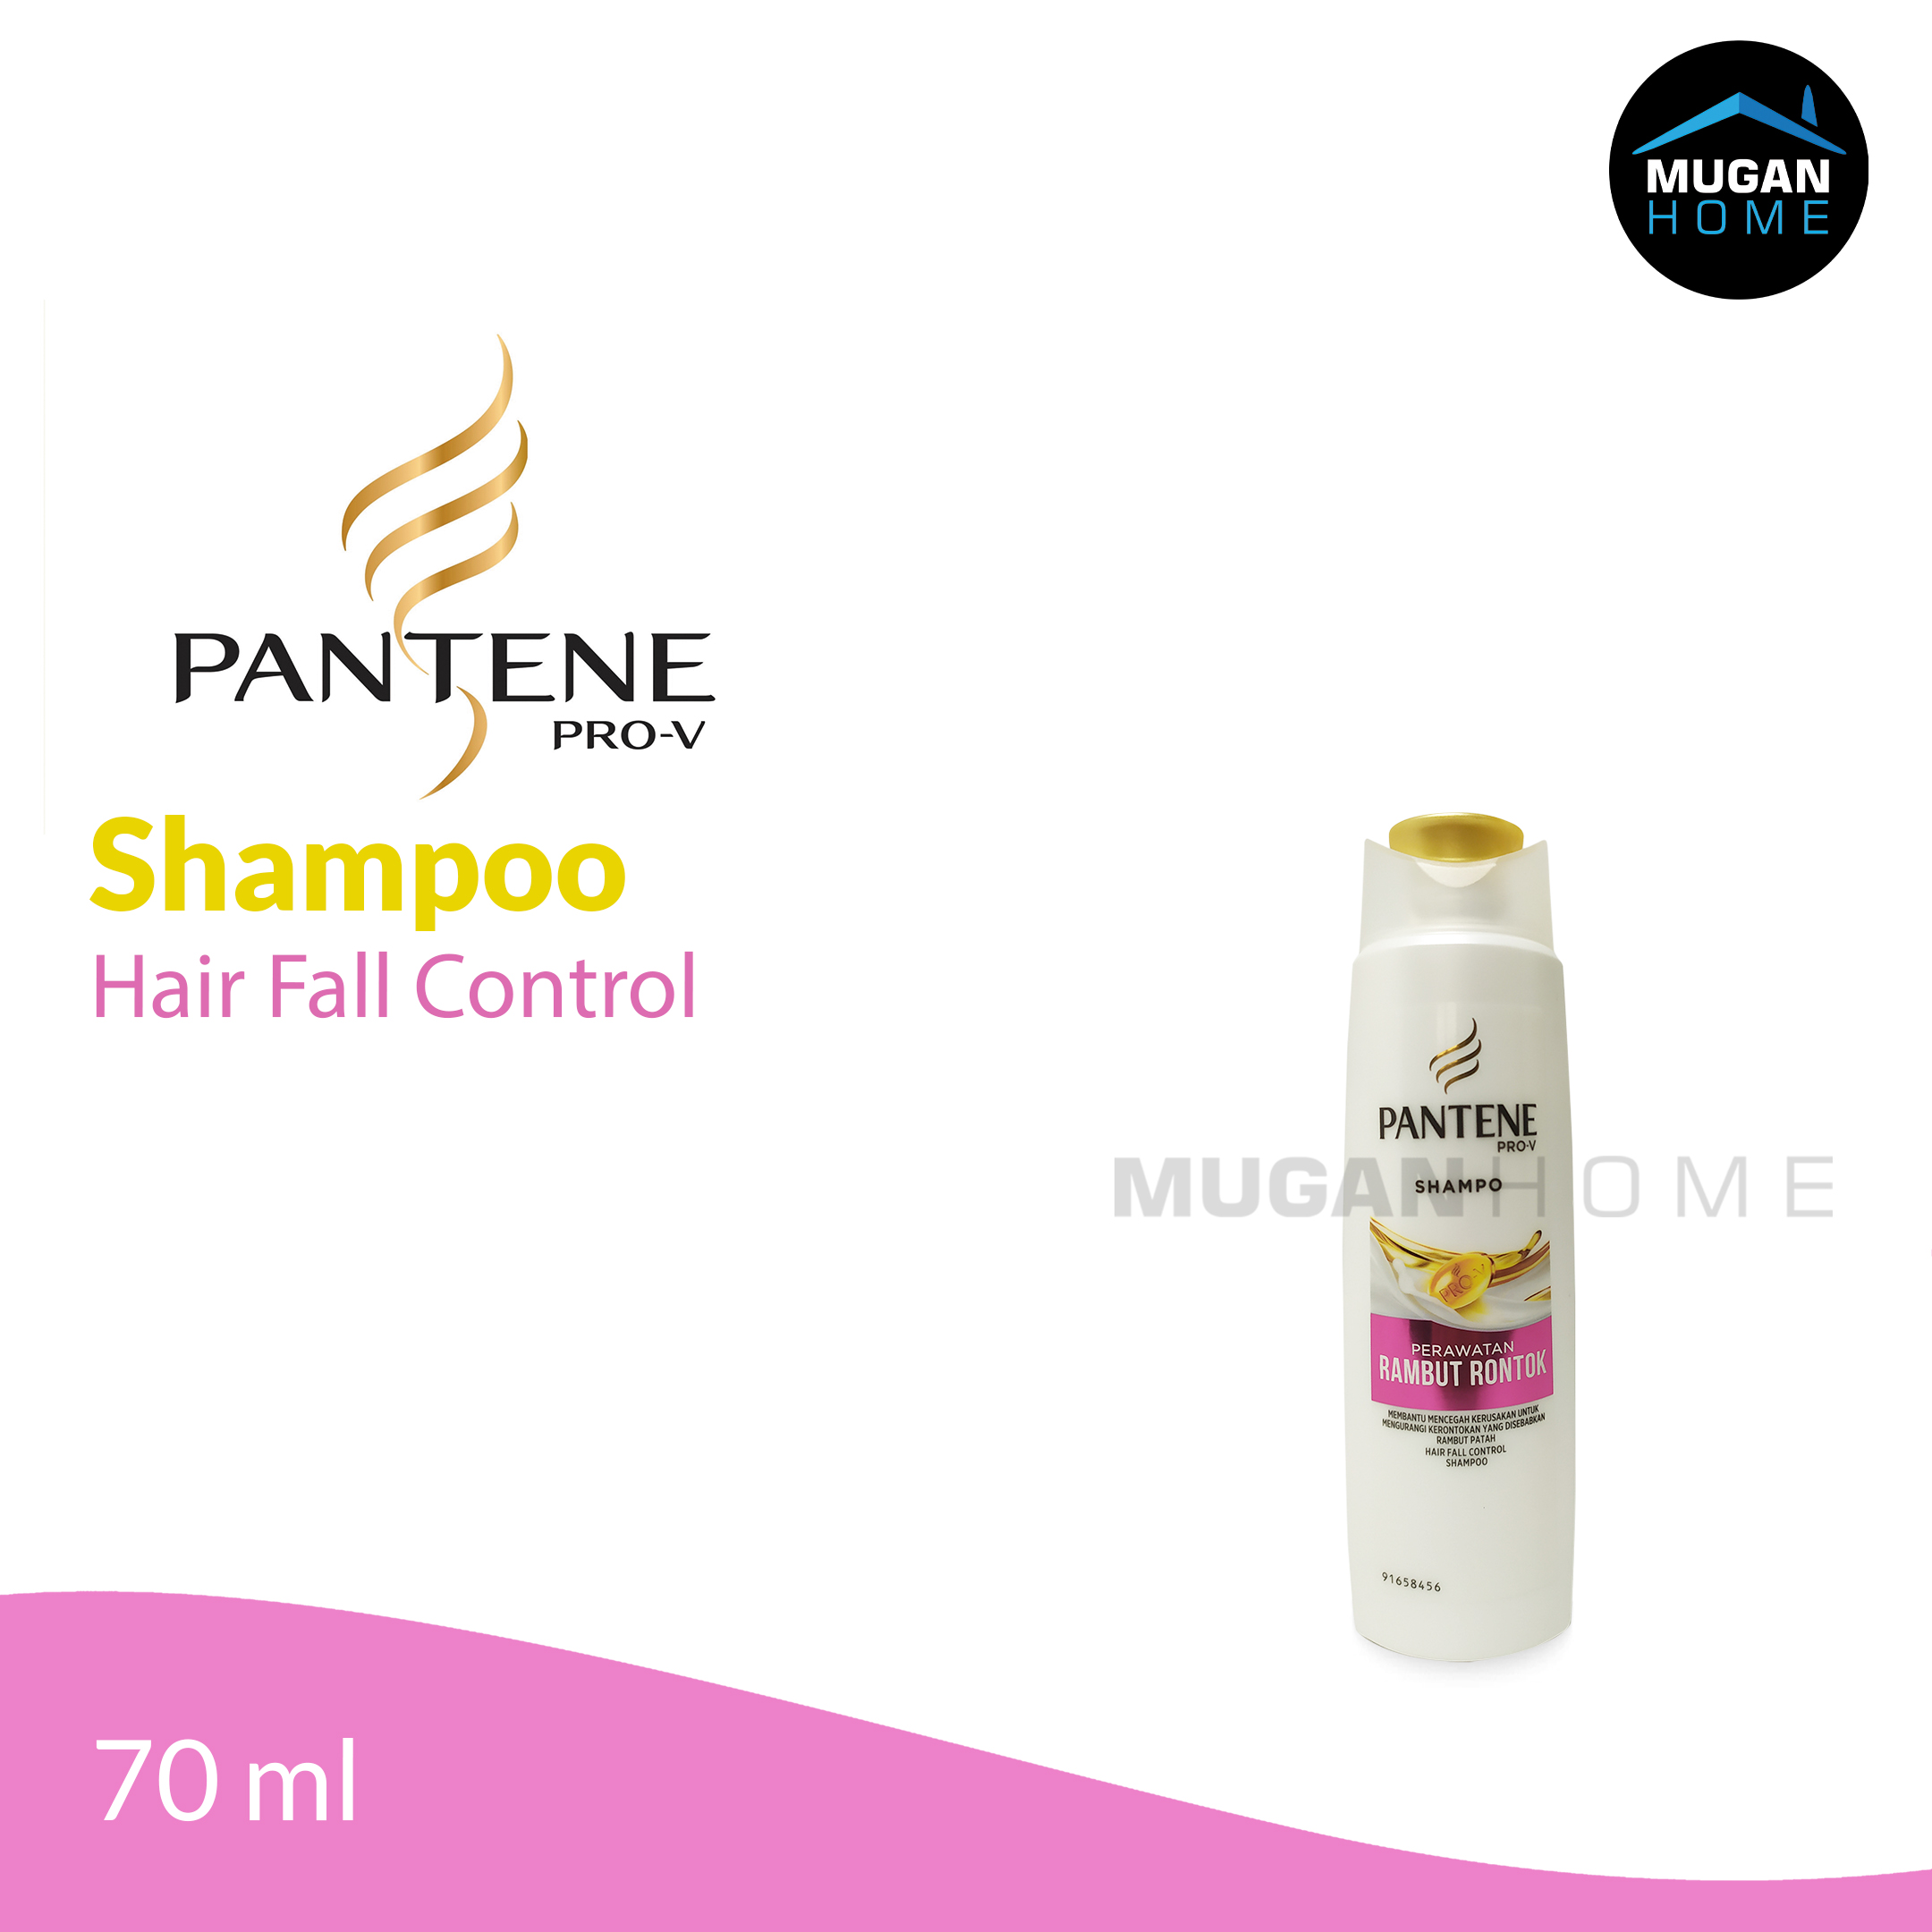 PANTENE SHAMPOO 70ML HAIR FALL CONTROL